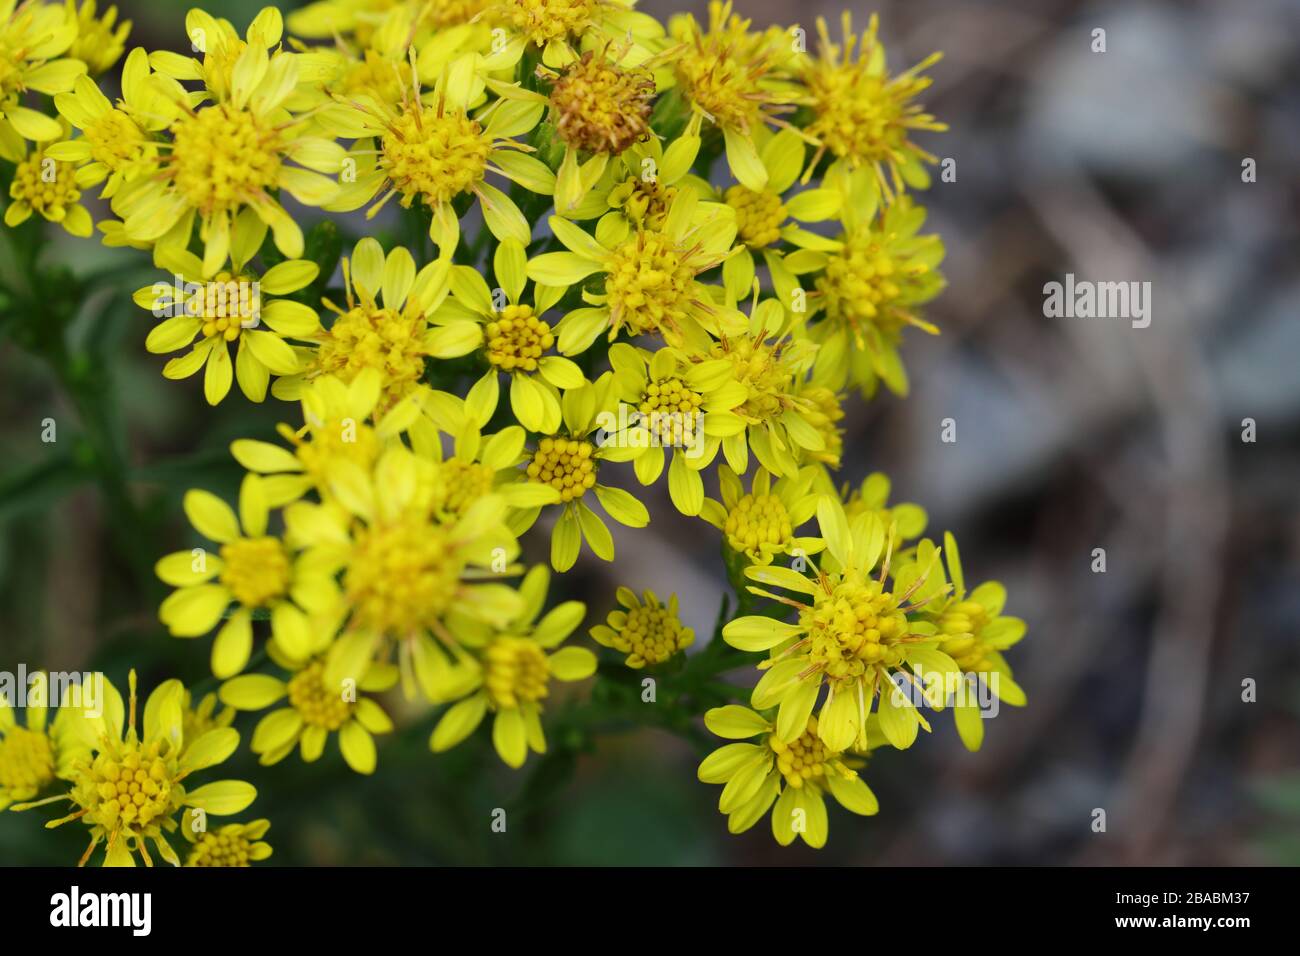 Solidago, im Allgemeinen Goldenruten genannt, ist eine Gattung von etwa 100 bis 120 Arten von blühenden Pflanzen in der Familie der Aster, der Asteraceae. Stockfoto